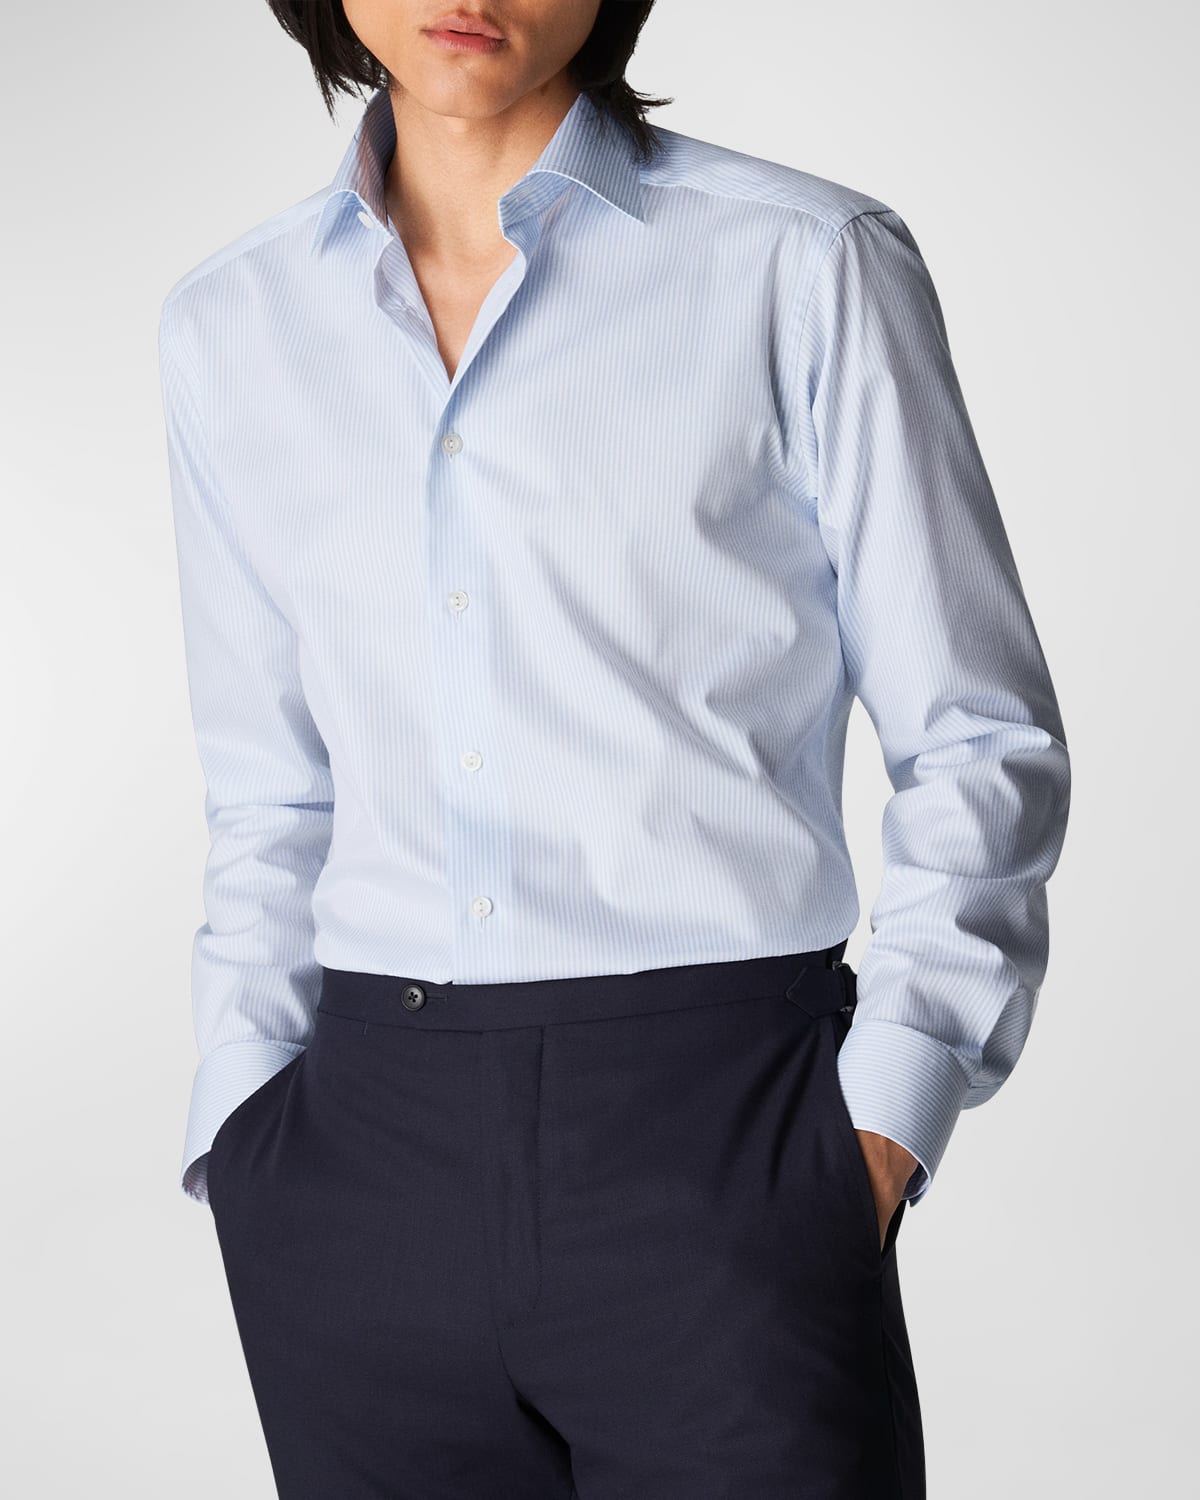 Men's Contemporary Fit Cotton Stripe Dress Shirt